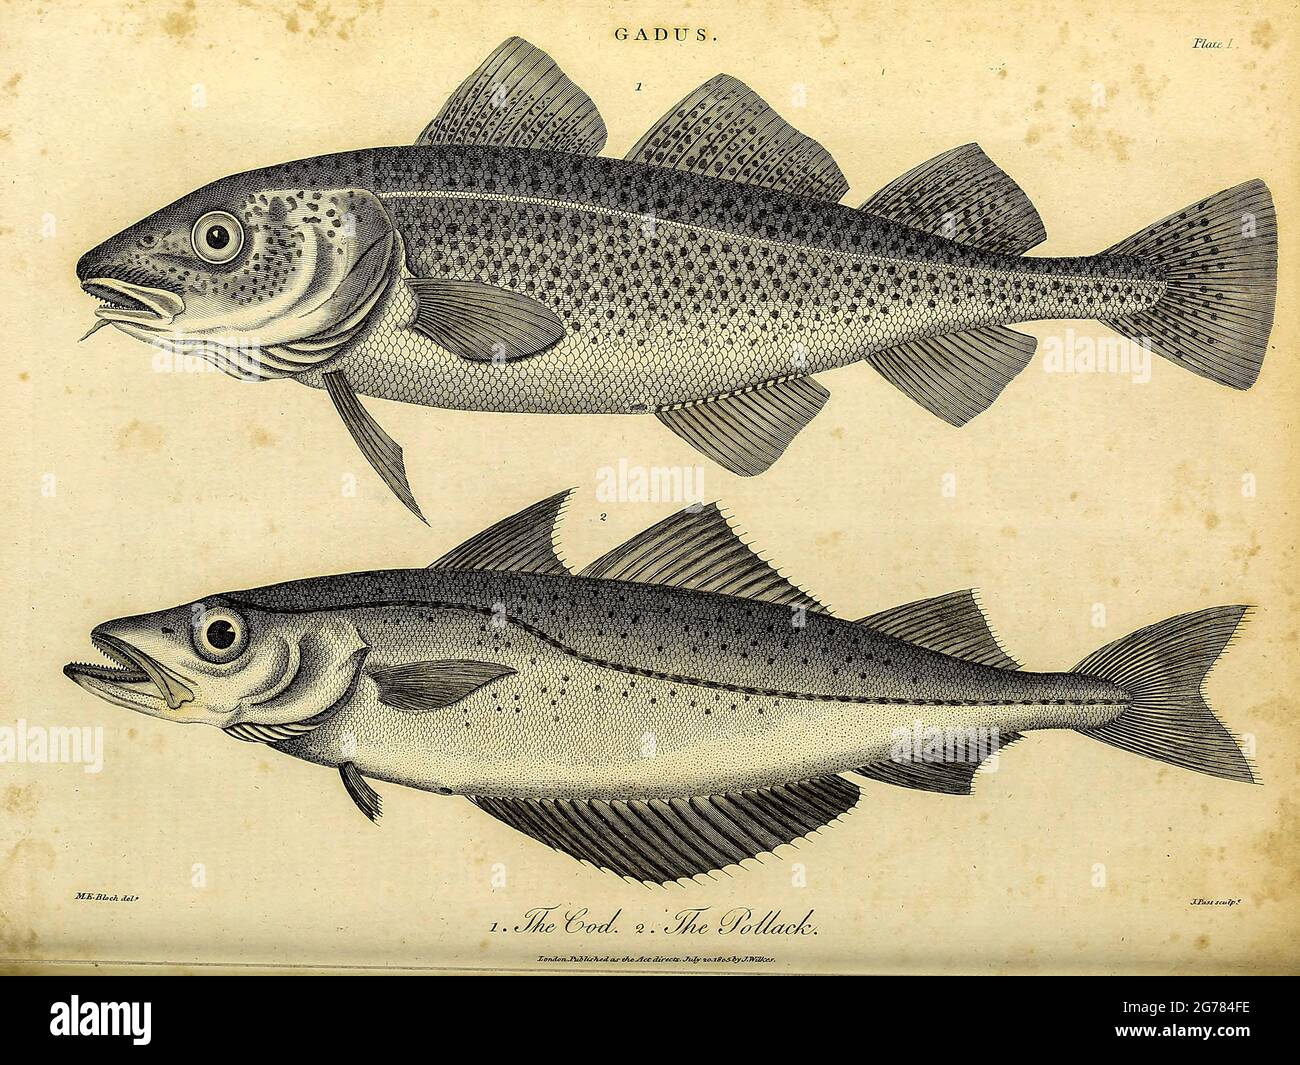 Gadus è un genere di pesci demersali della famiglia Gadidae, comunemente  noto come merluzzo bianco, anche se ci sono altre specie di merluzzo in  altri generi. Il membro più noto del genere